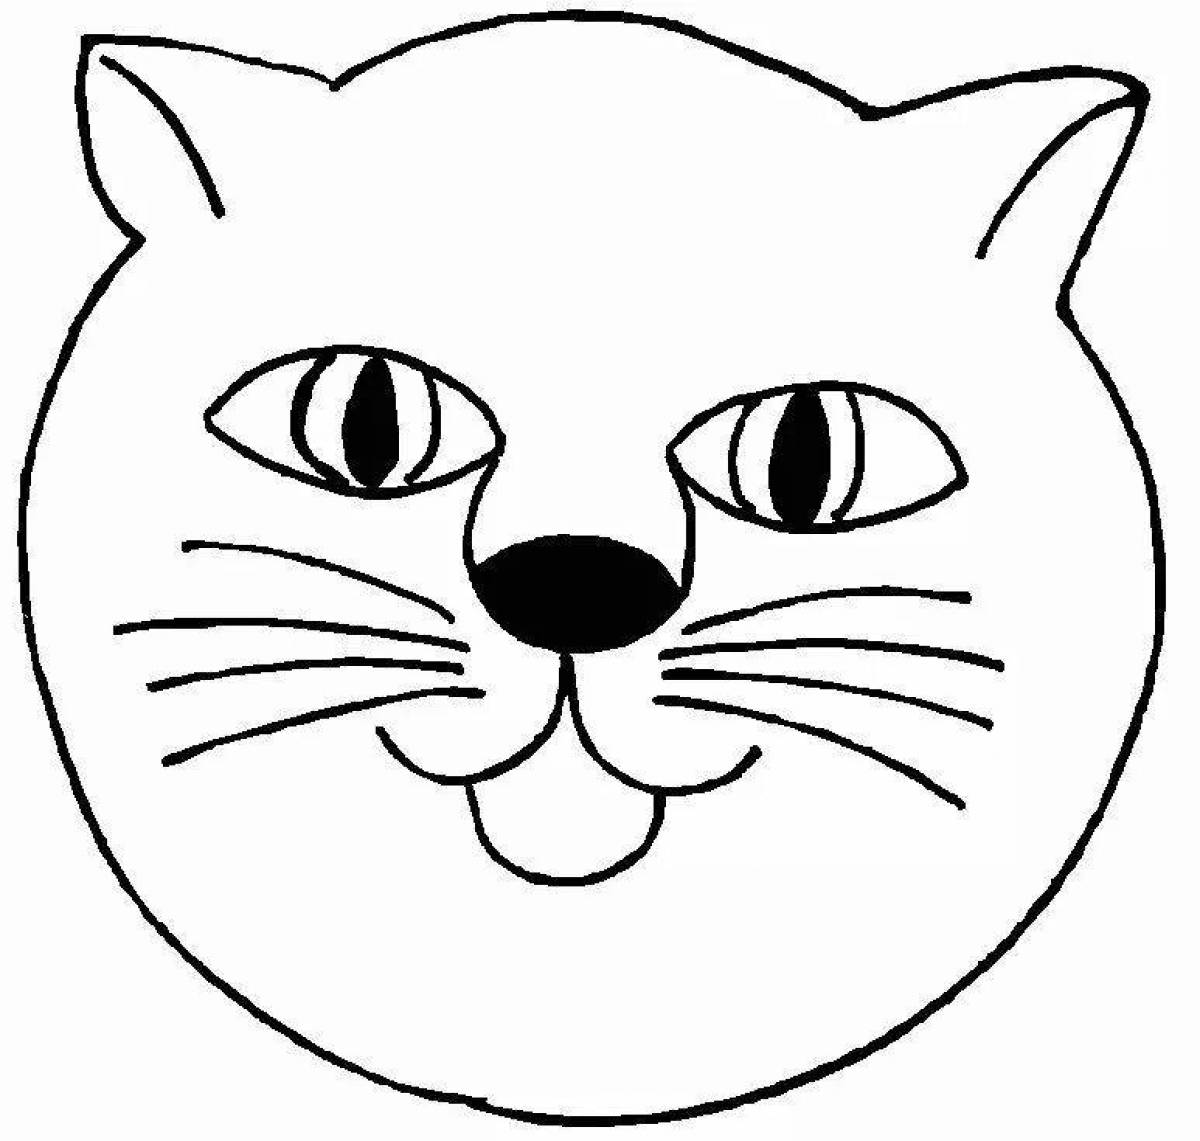 Cat face #2